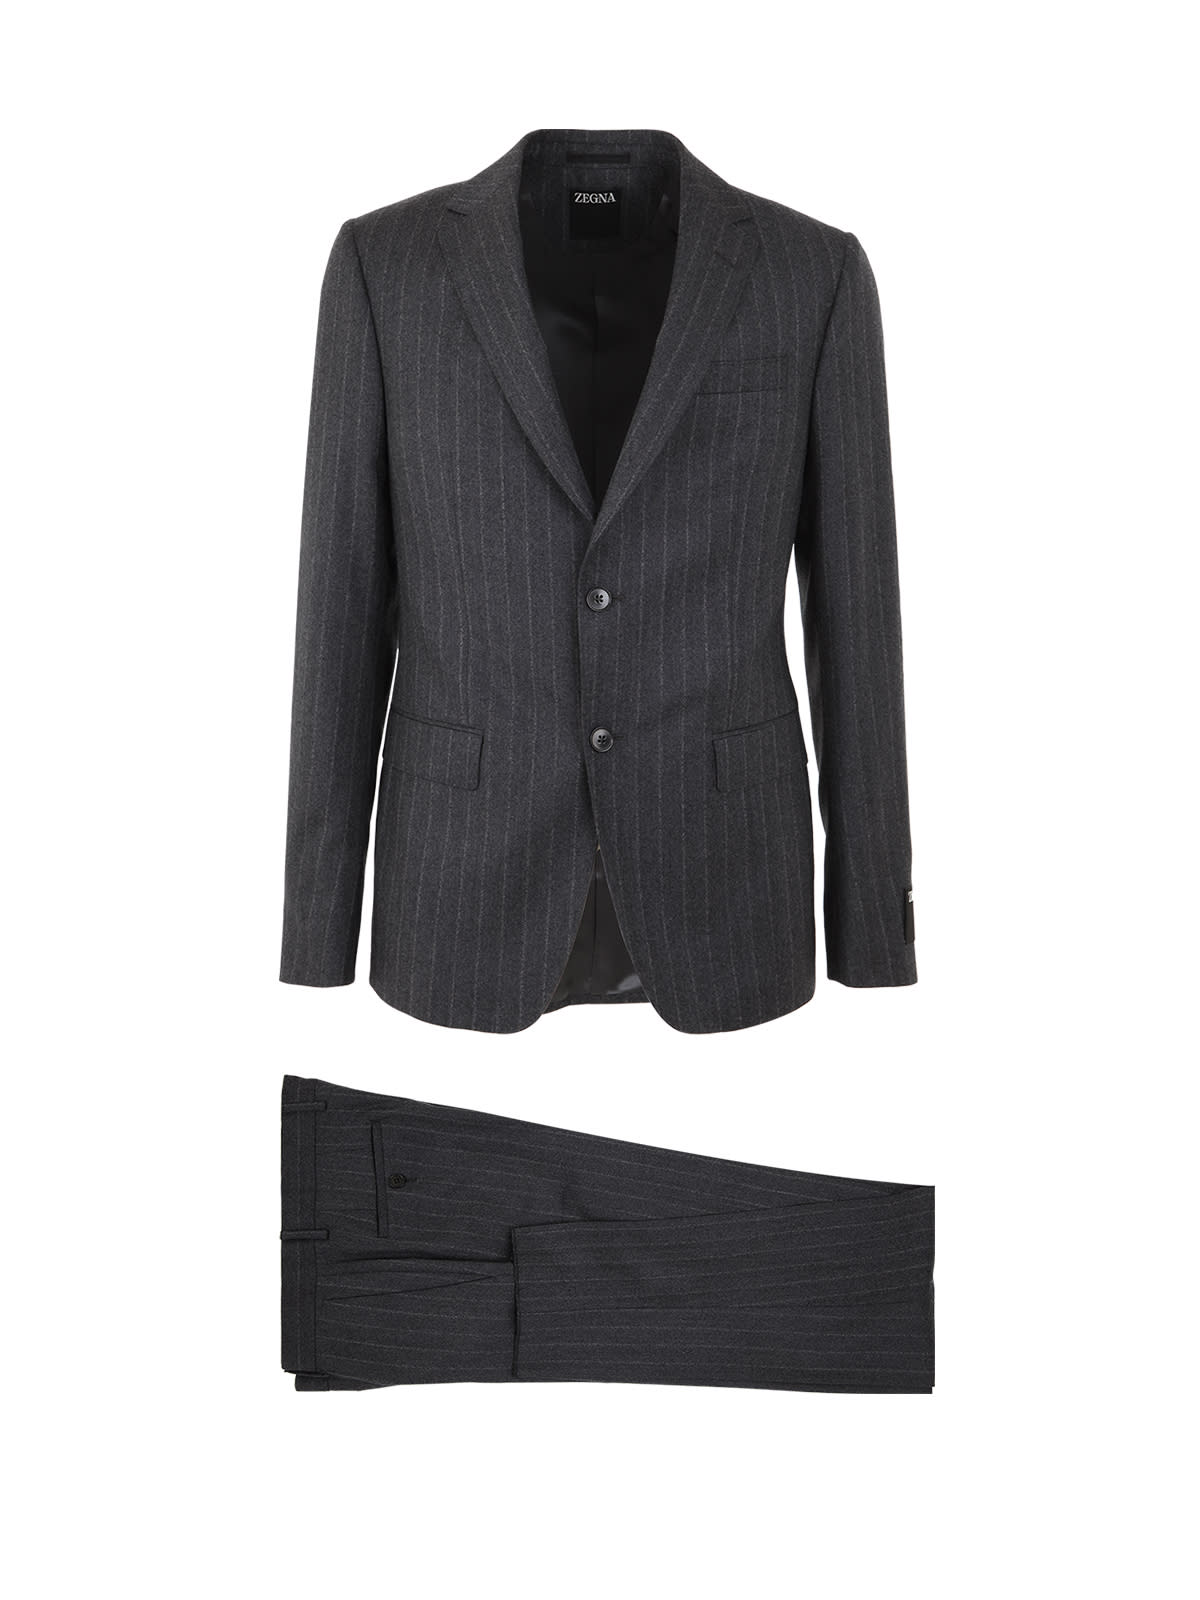 Ermenegildo Zegna Pure Wool Tailored Suit